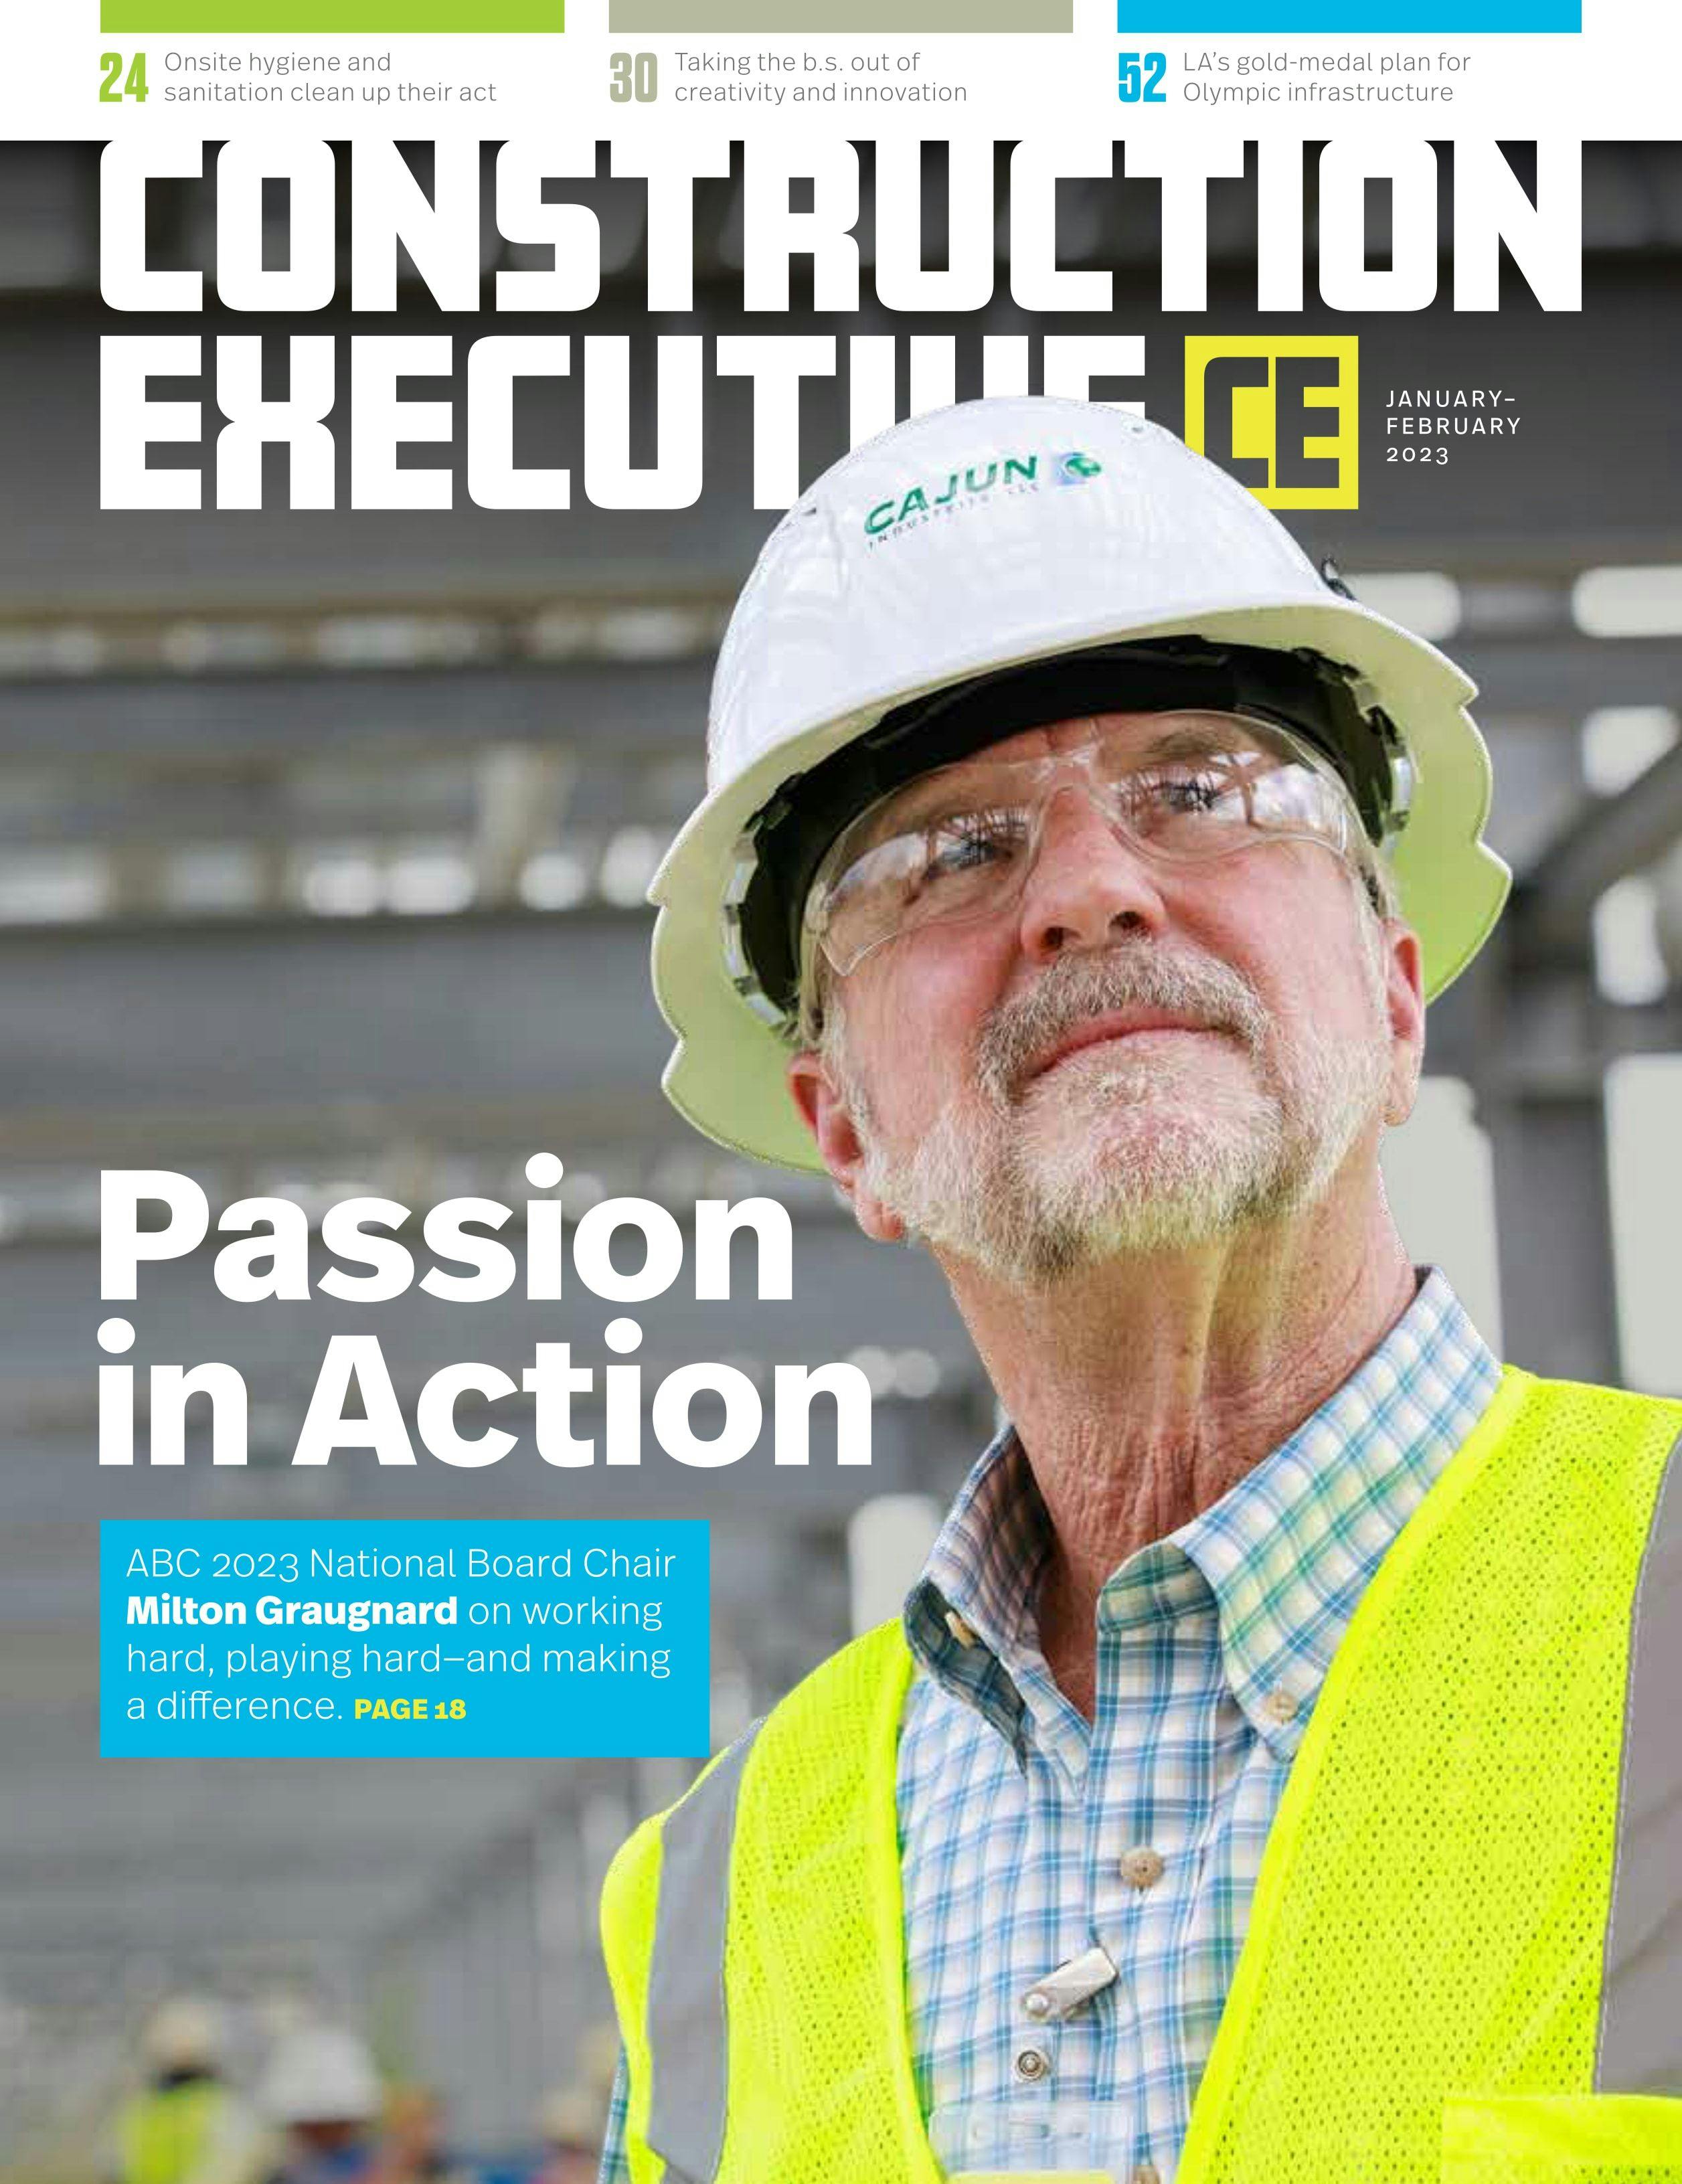 Construction Executive Cover Art